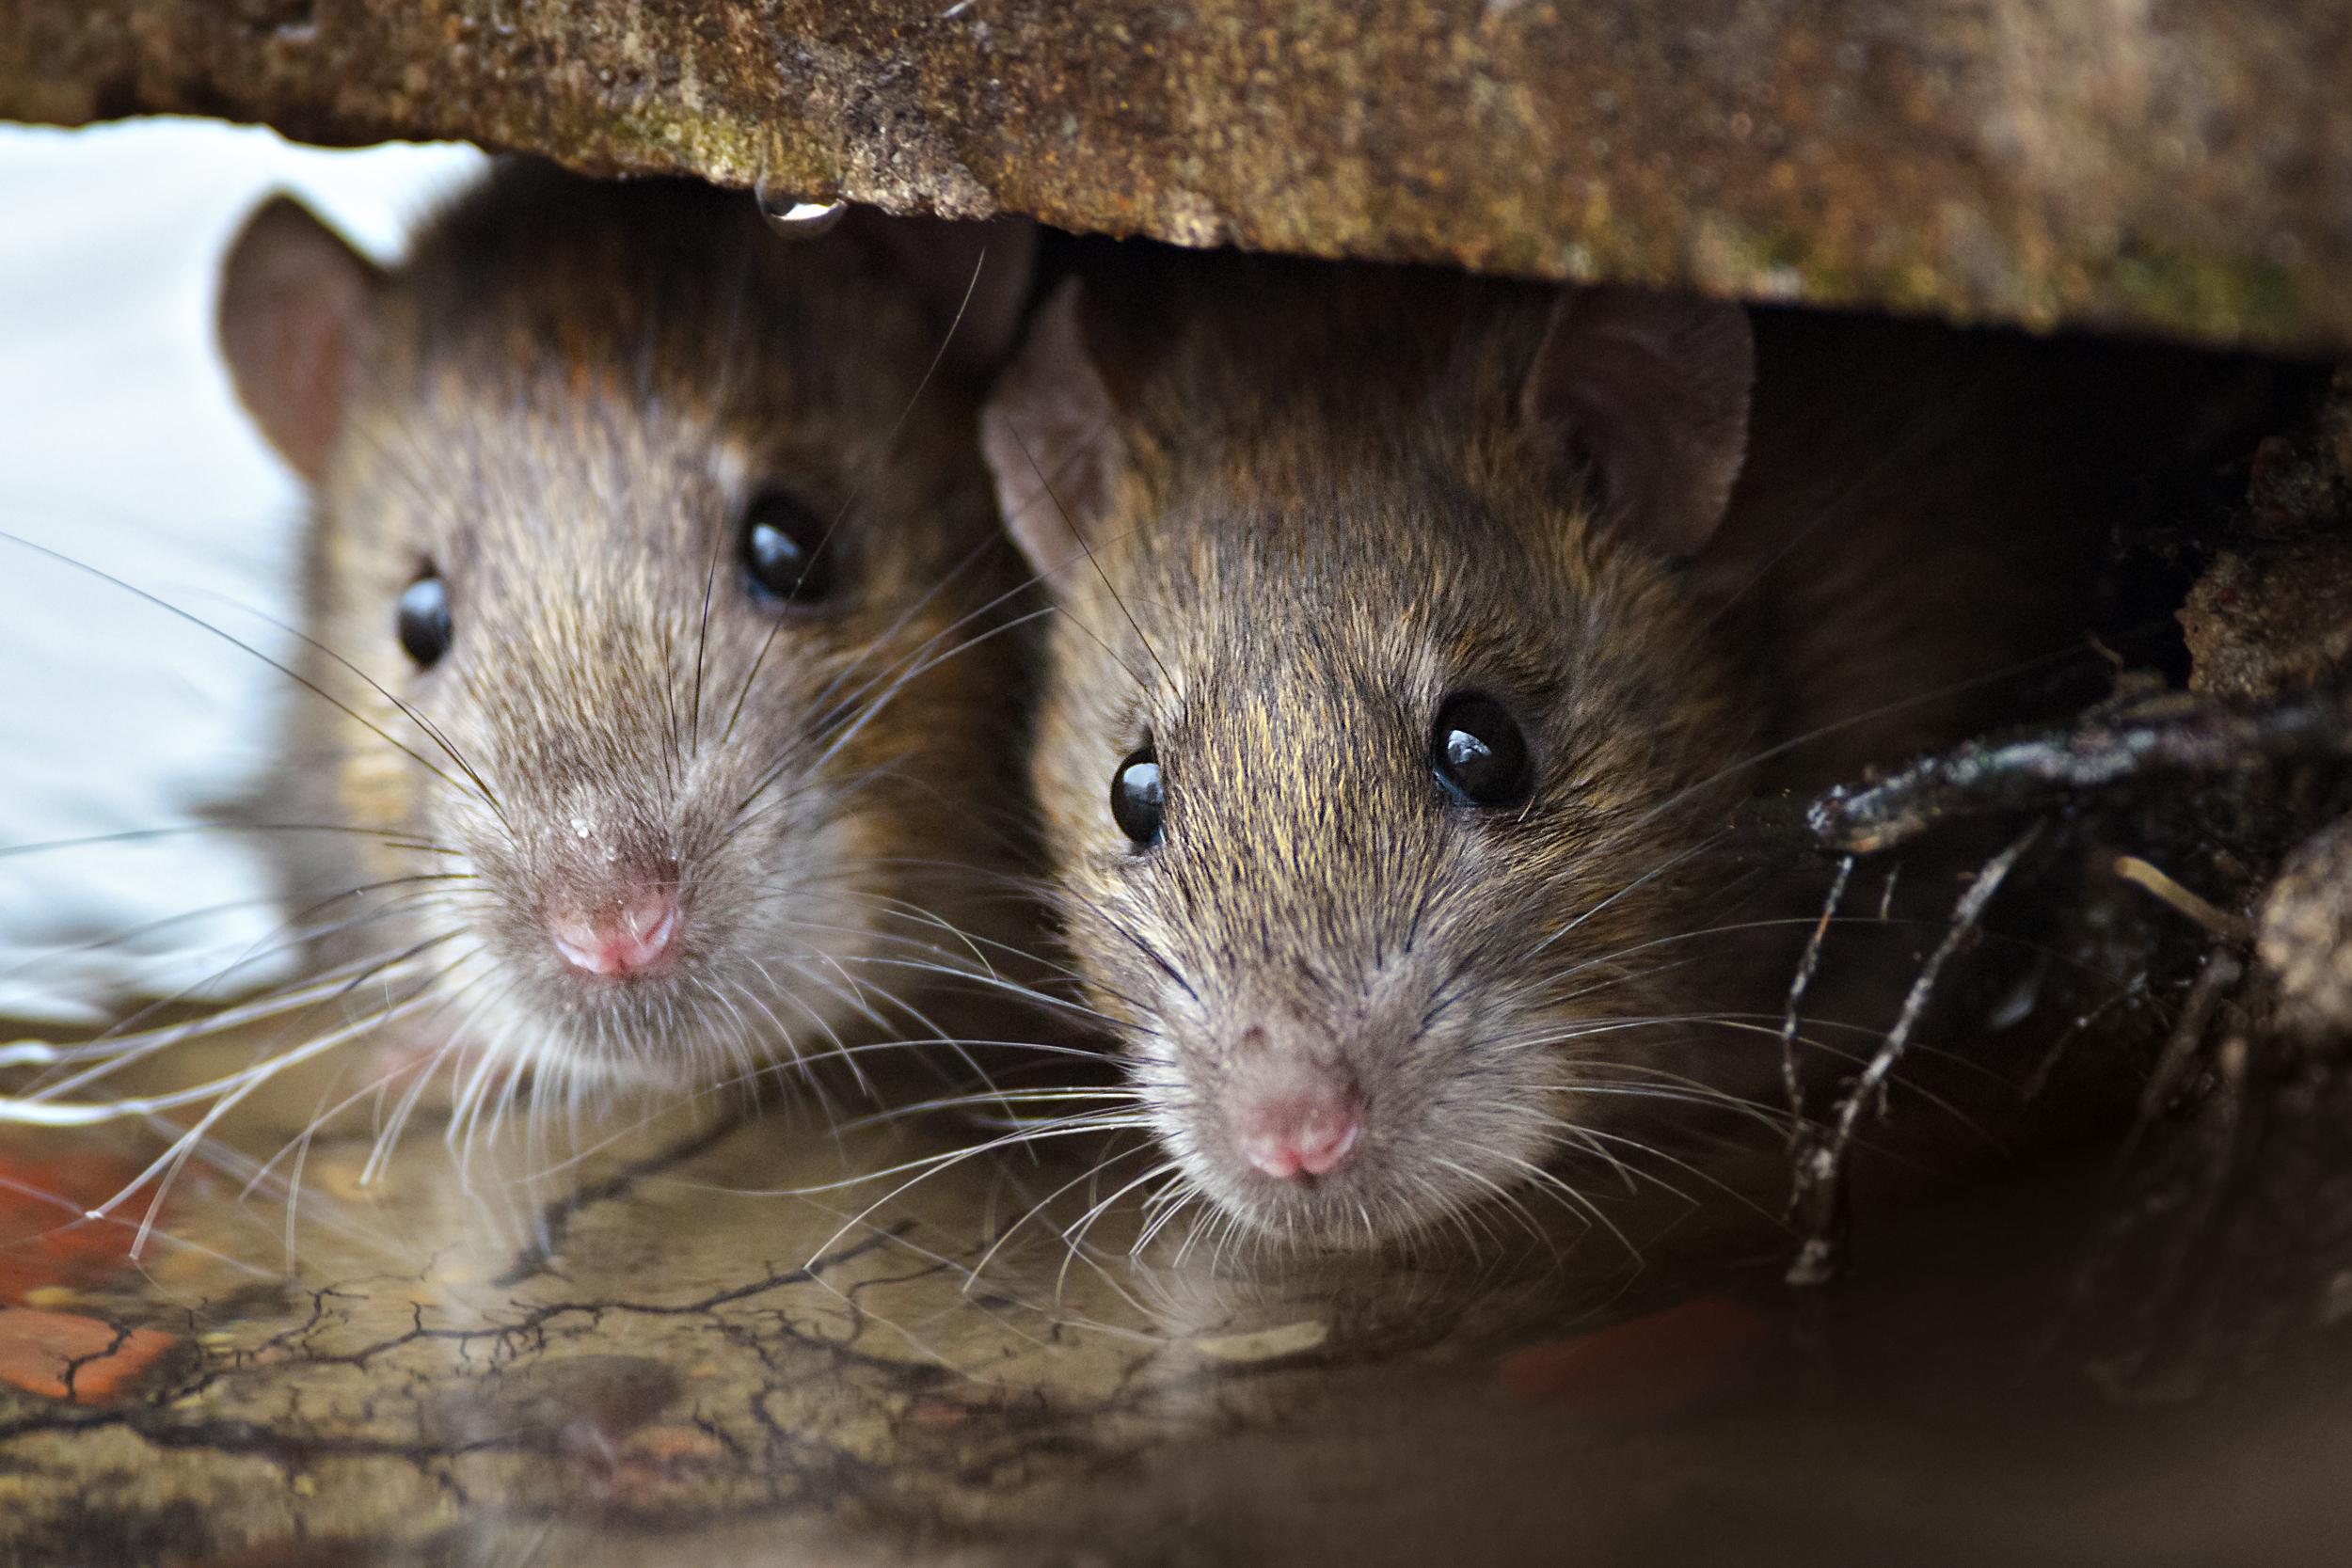 Crean ratones con dos padres biológicos con óvulos cultivados a partir de células masculinas